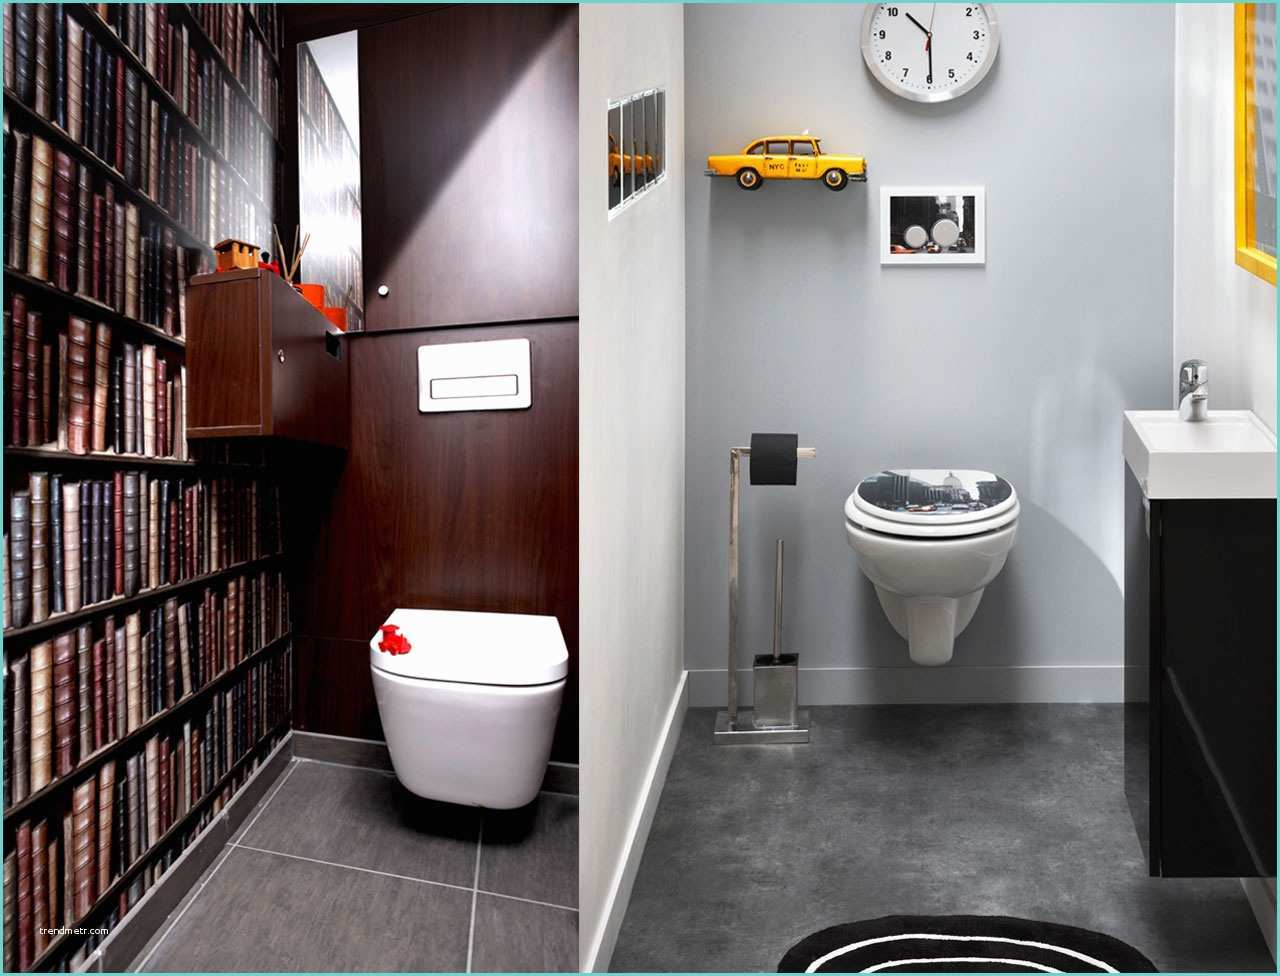 Idee Decoration toilette Wc Décoration Zen Pour Wc Exemples D Aménagements